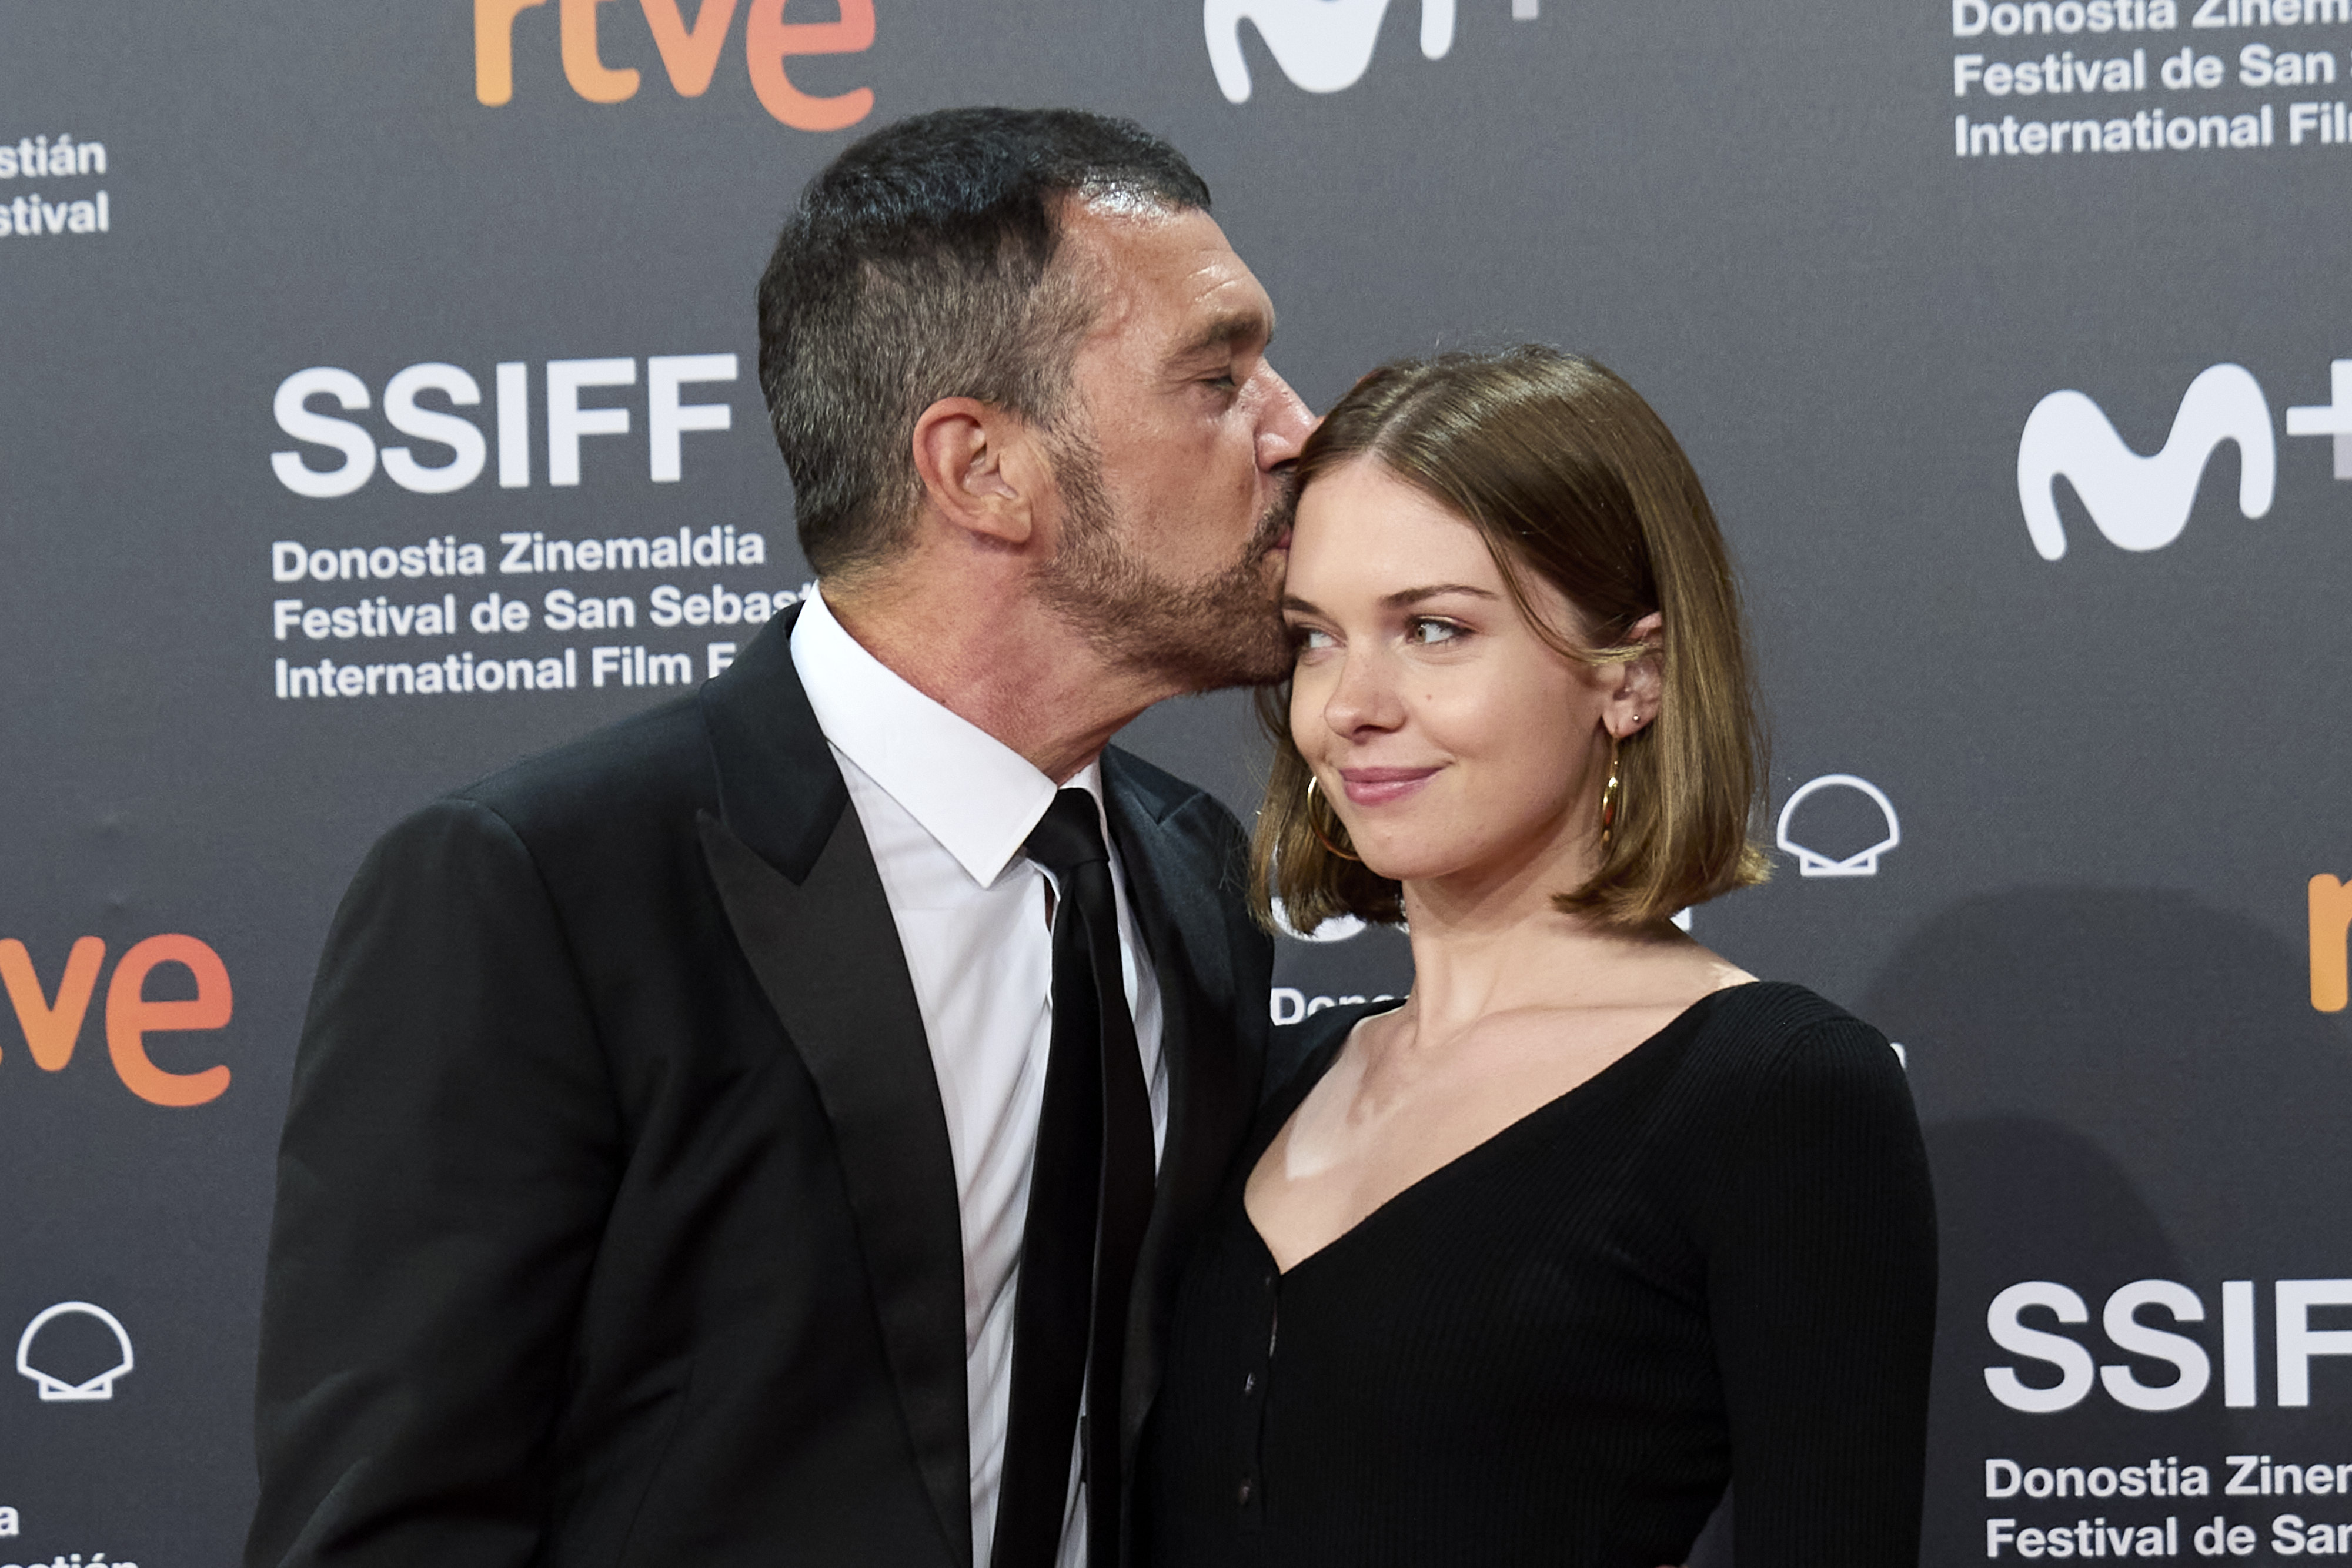 Antonio und Stella Banderas auf dem 69. San Sebastian Film Festival in San Sebastian, Spanien am 17. September 2021 | Quelle: Getty Images